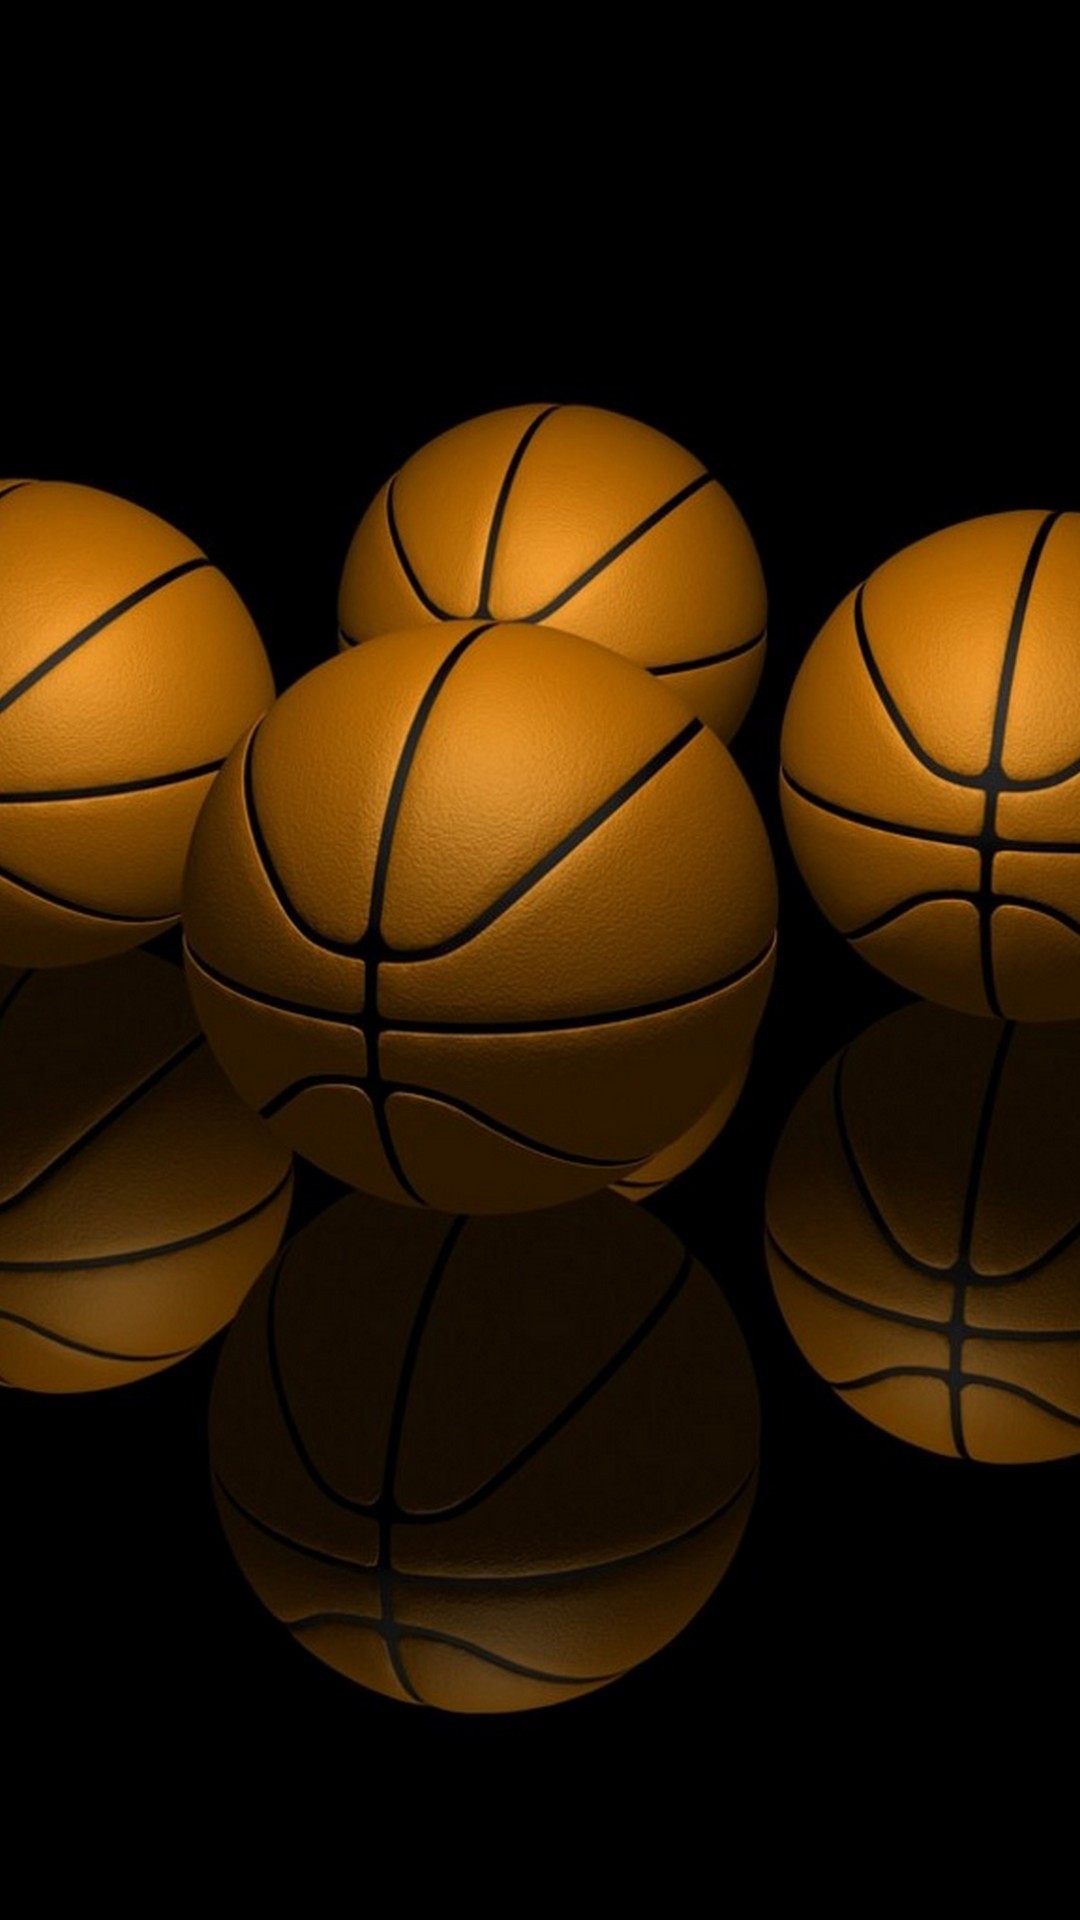 Basketball iPhone 5 wallpaper